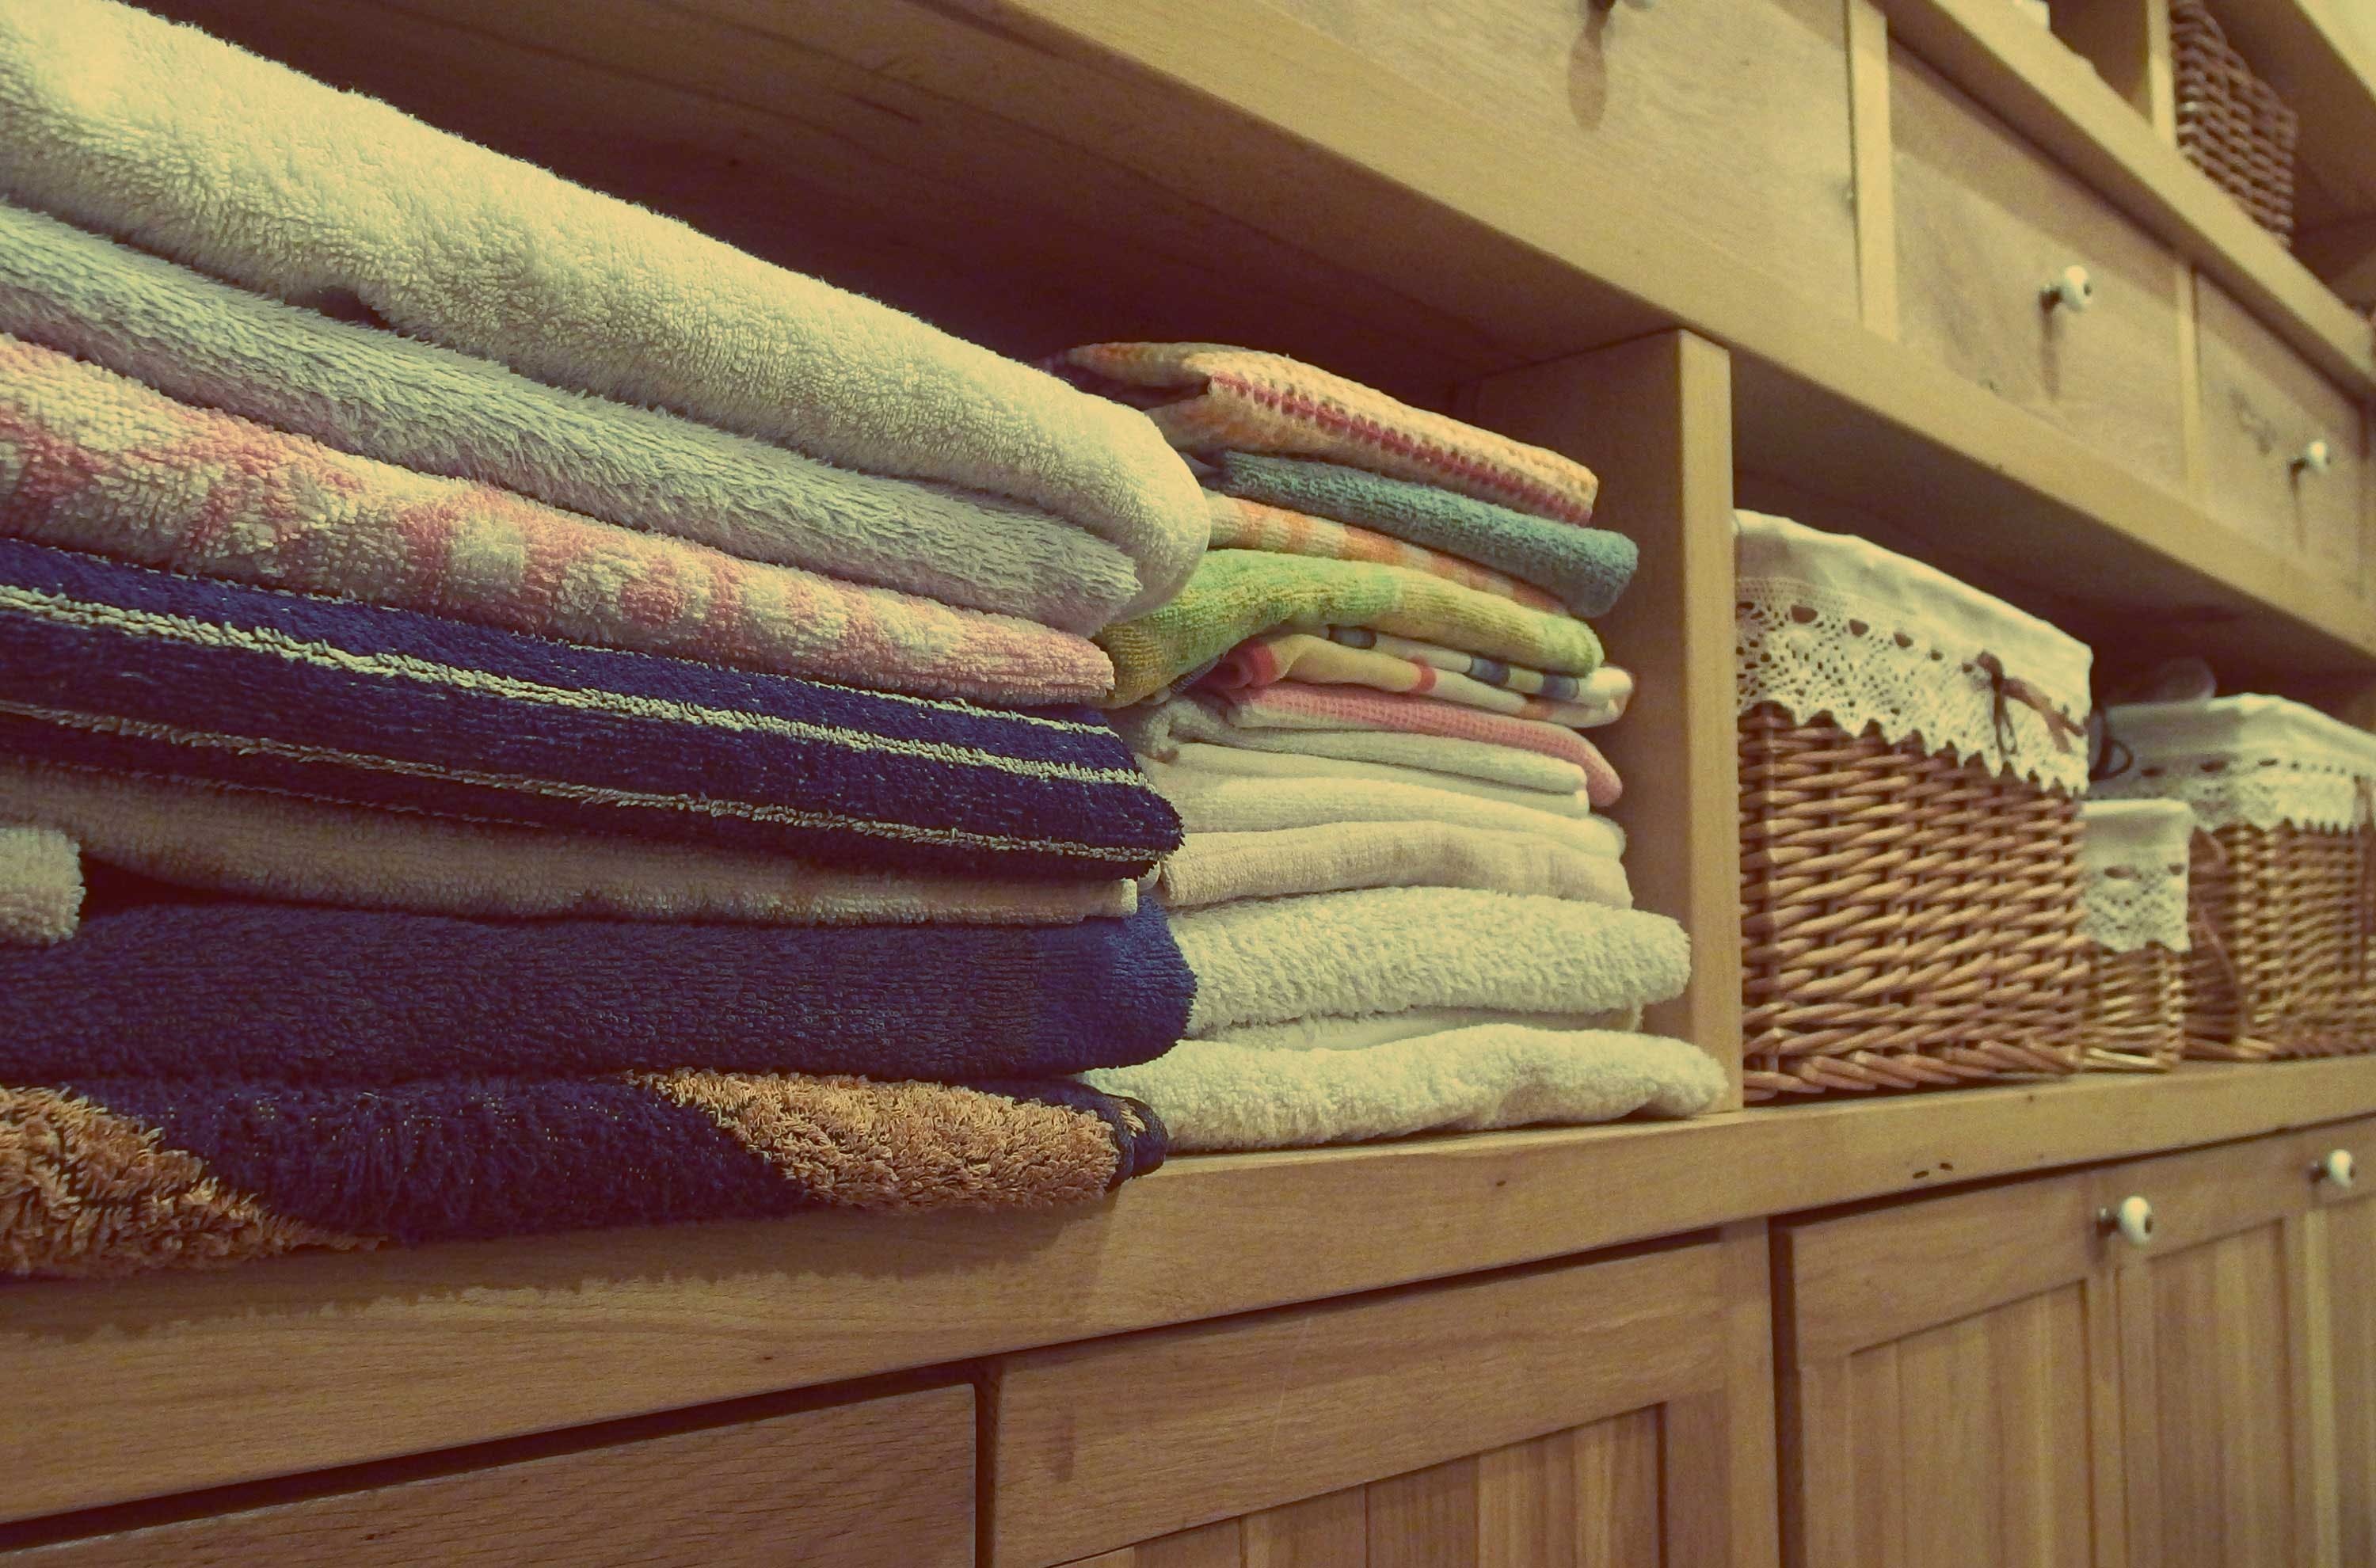 Una pila de toallas. | Fuente: Pexels